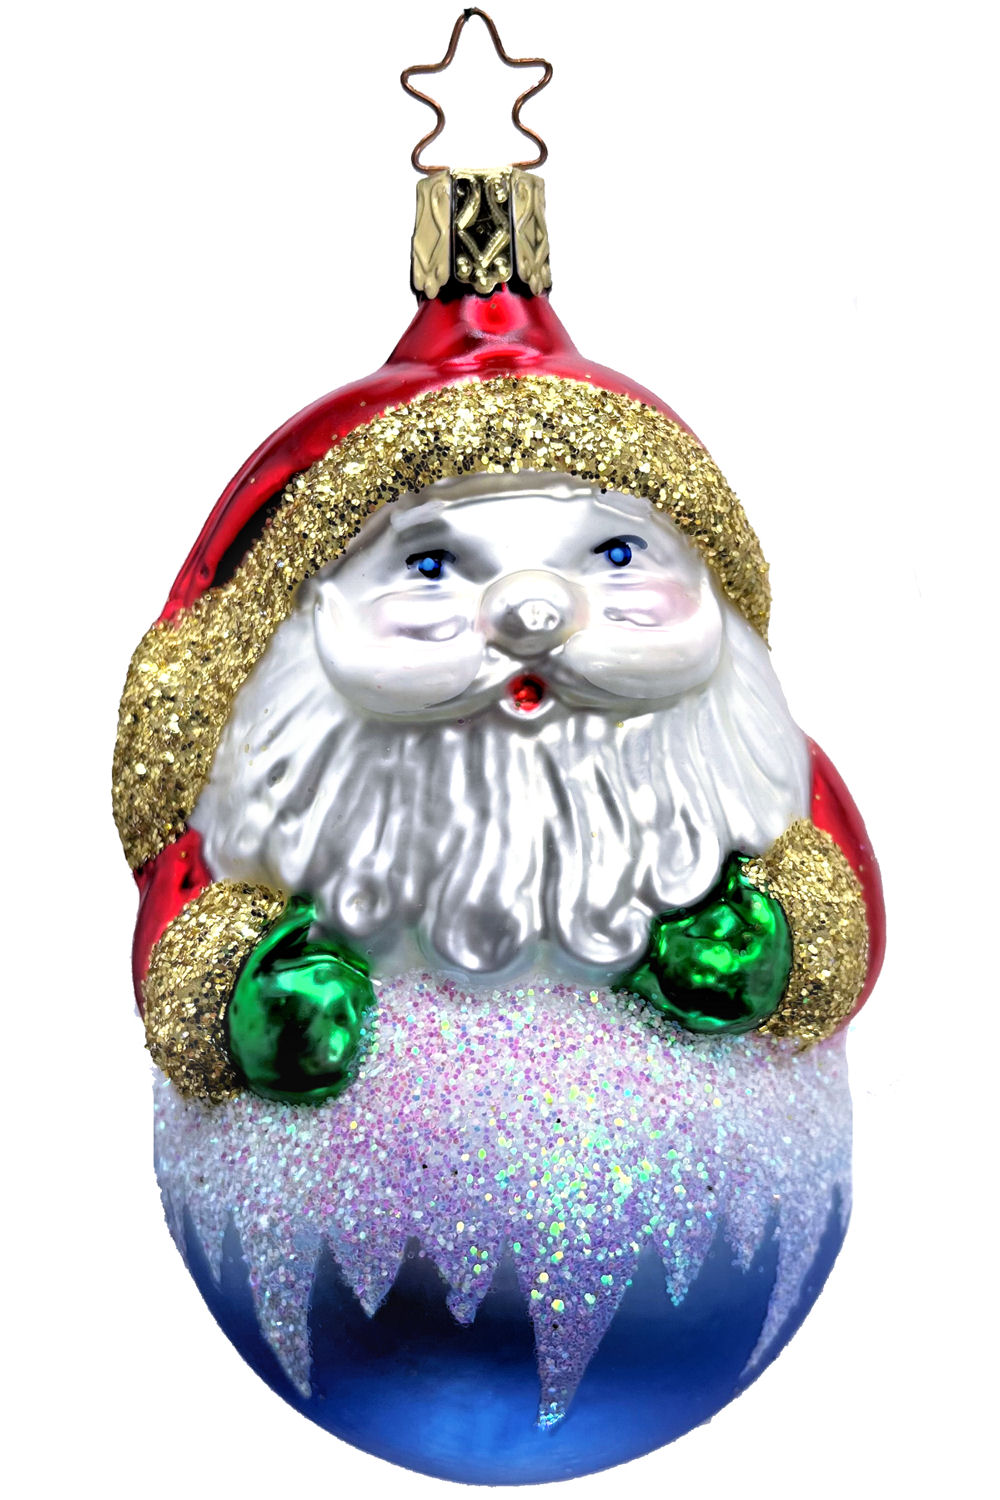 Old World Christmas Inge Glass Ornaments Christmas Princess NEW 